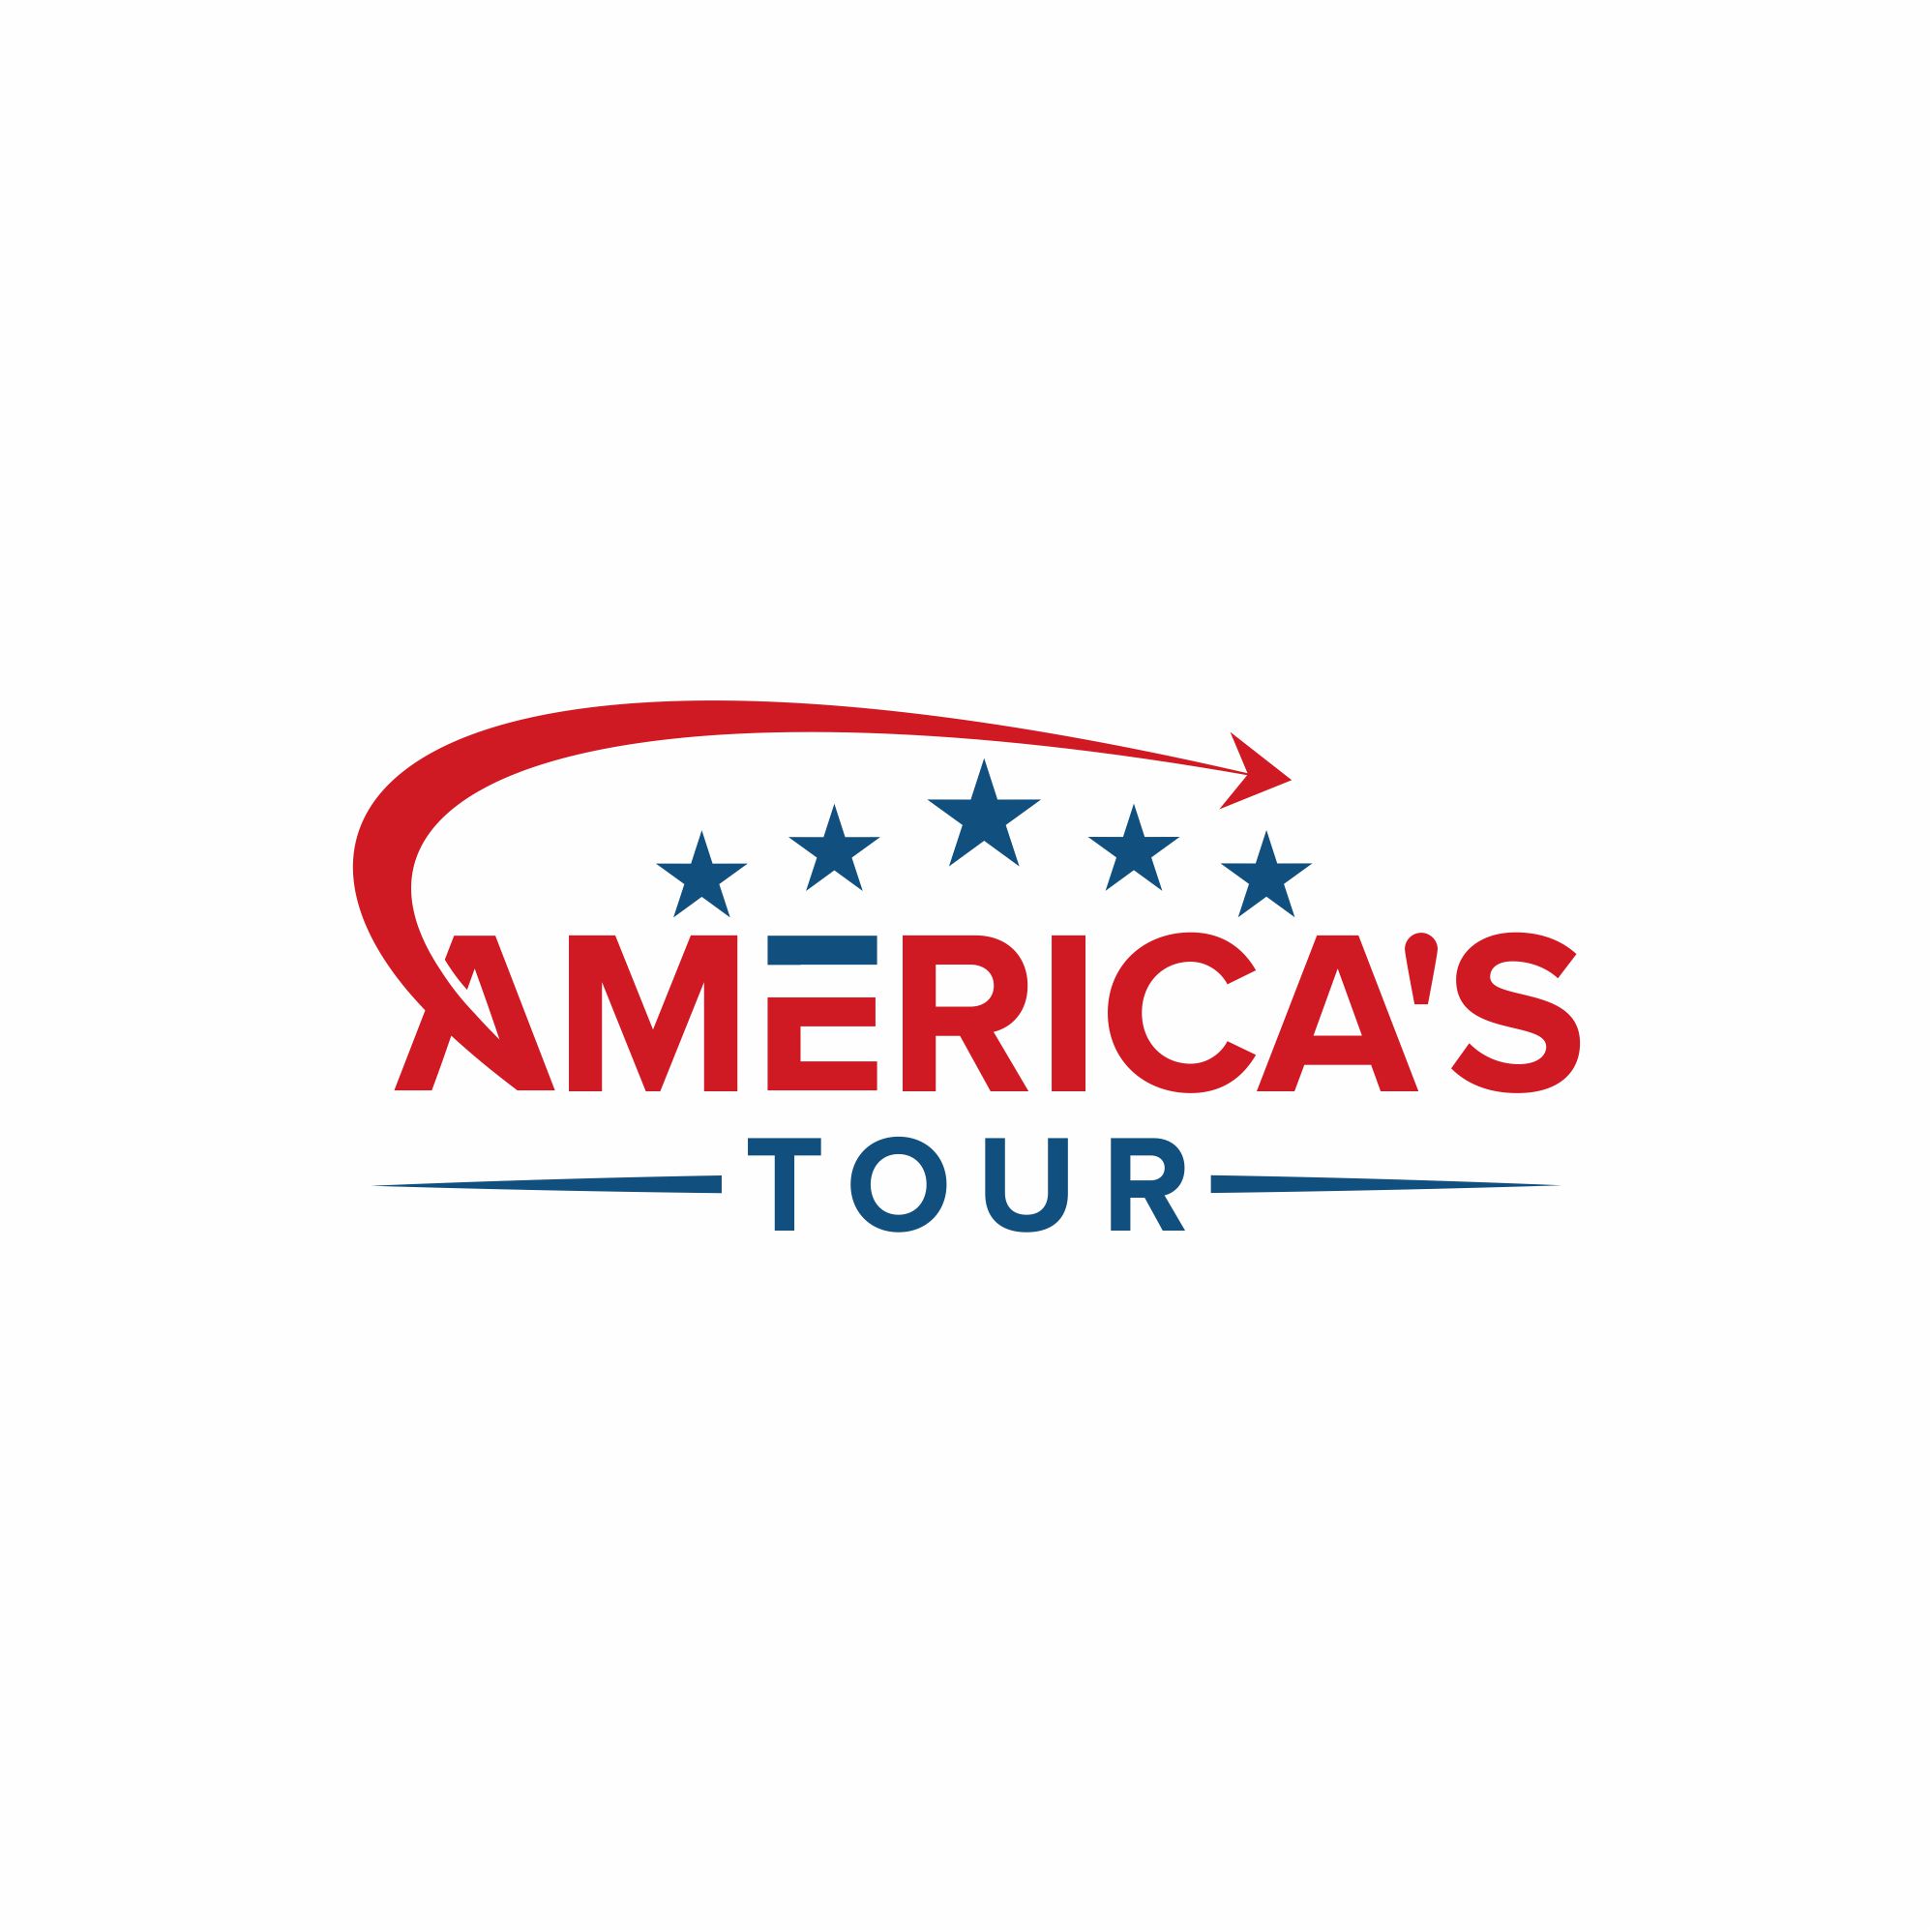 america tour company